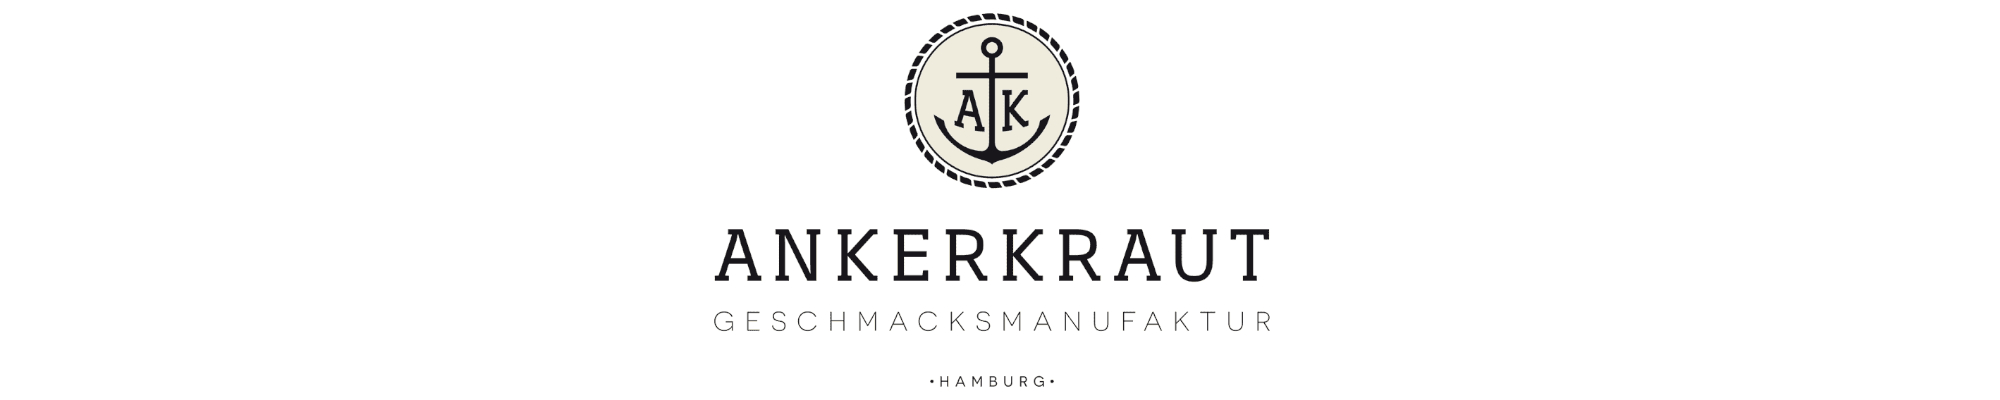 Ankerkraut - Fire & Smoke (Wacken)